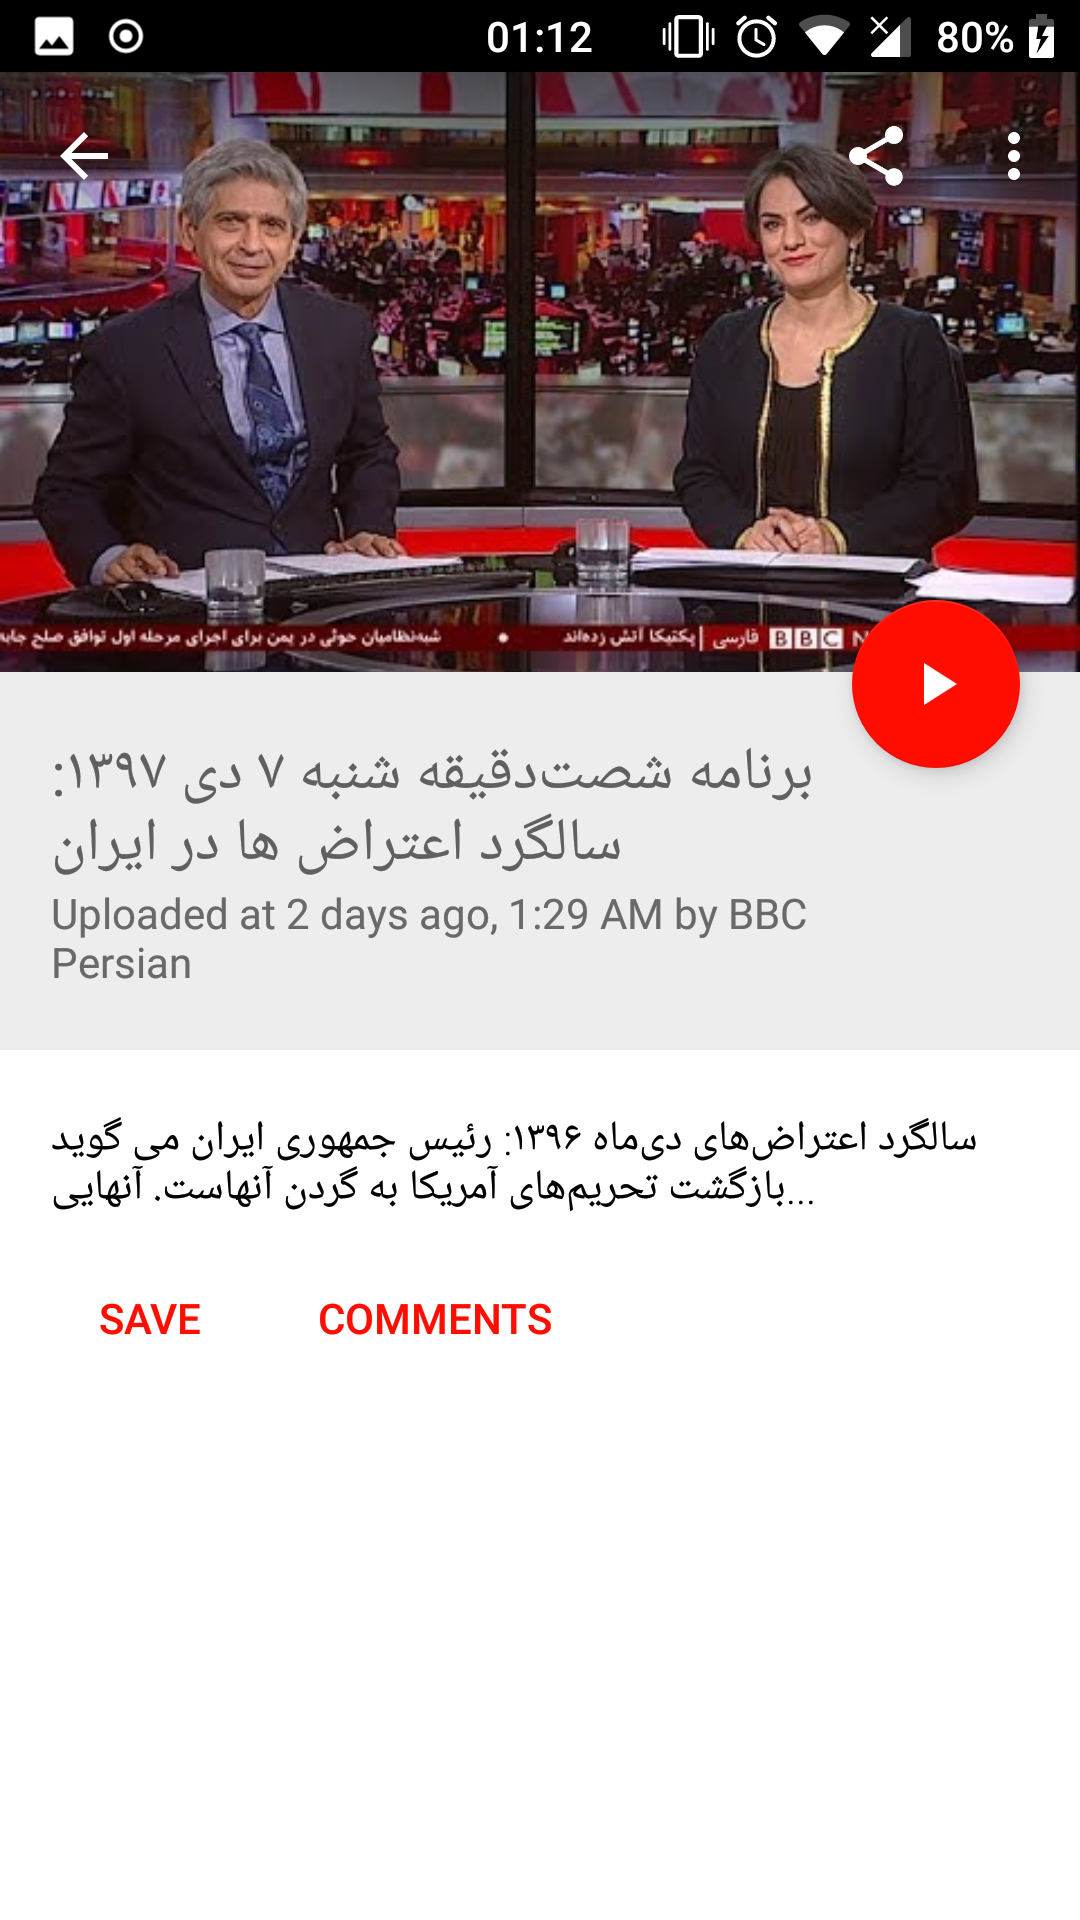 BBC Persian - News & Live TV APK 4.31 for Android – Download BBC Persian -  News & Live TV APK Latest Version from APKFab.com